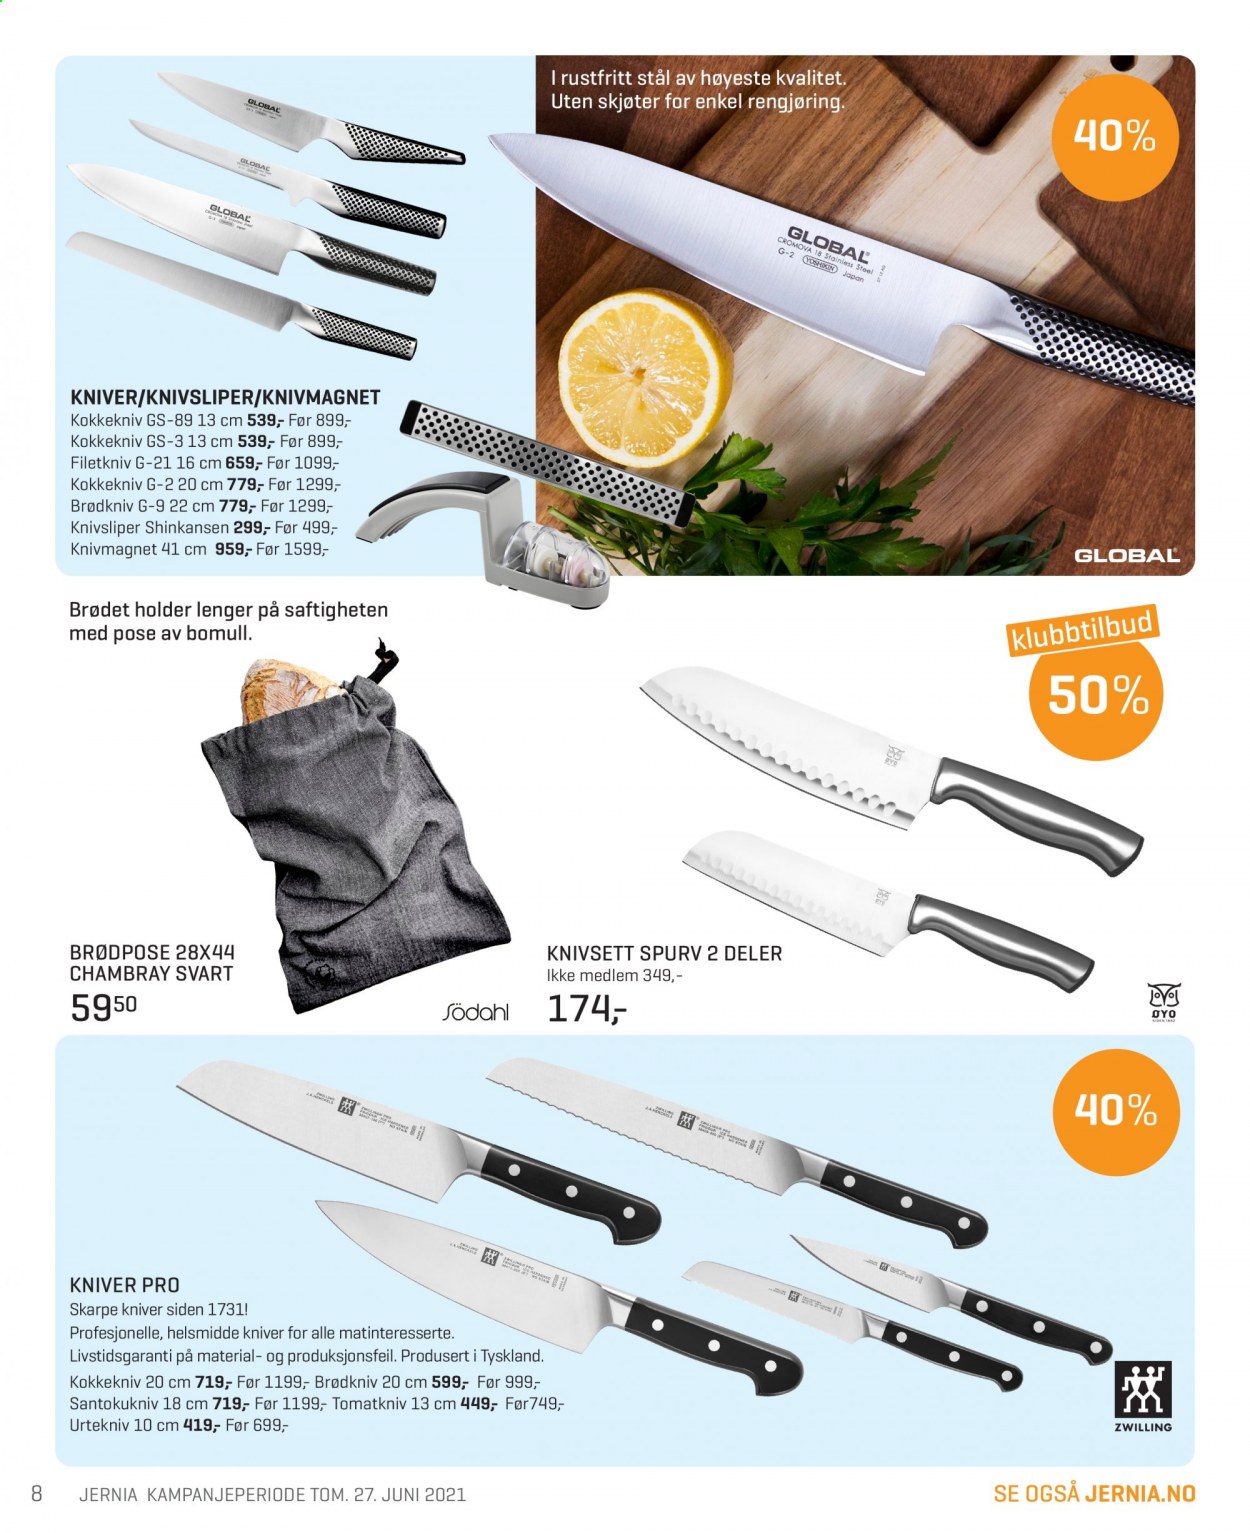 thumbnail - Kundeavis Jernia - 8.6.2021 - 27.6.2021 - Produkter fra tilbudsaviser - kniv, kokkekniv. Side 8.